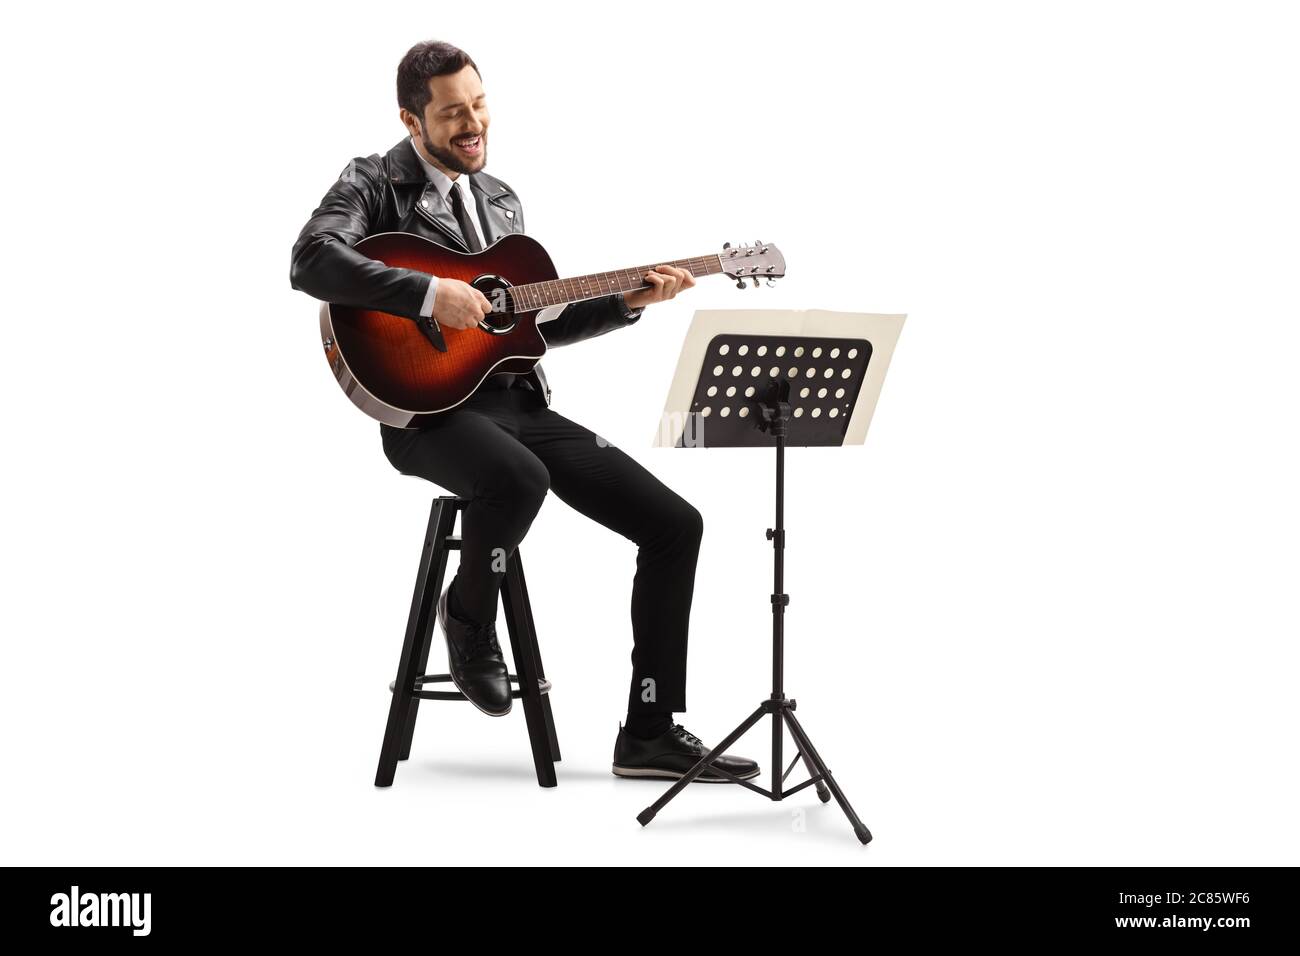 Musicista che suona una chitarra acustica e guarda un notebook musicale su uno stand isolato su sfondo bianco Foto Stock